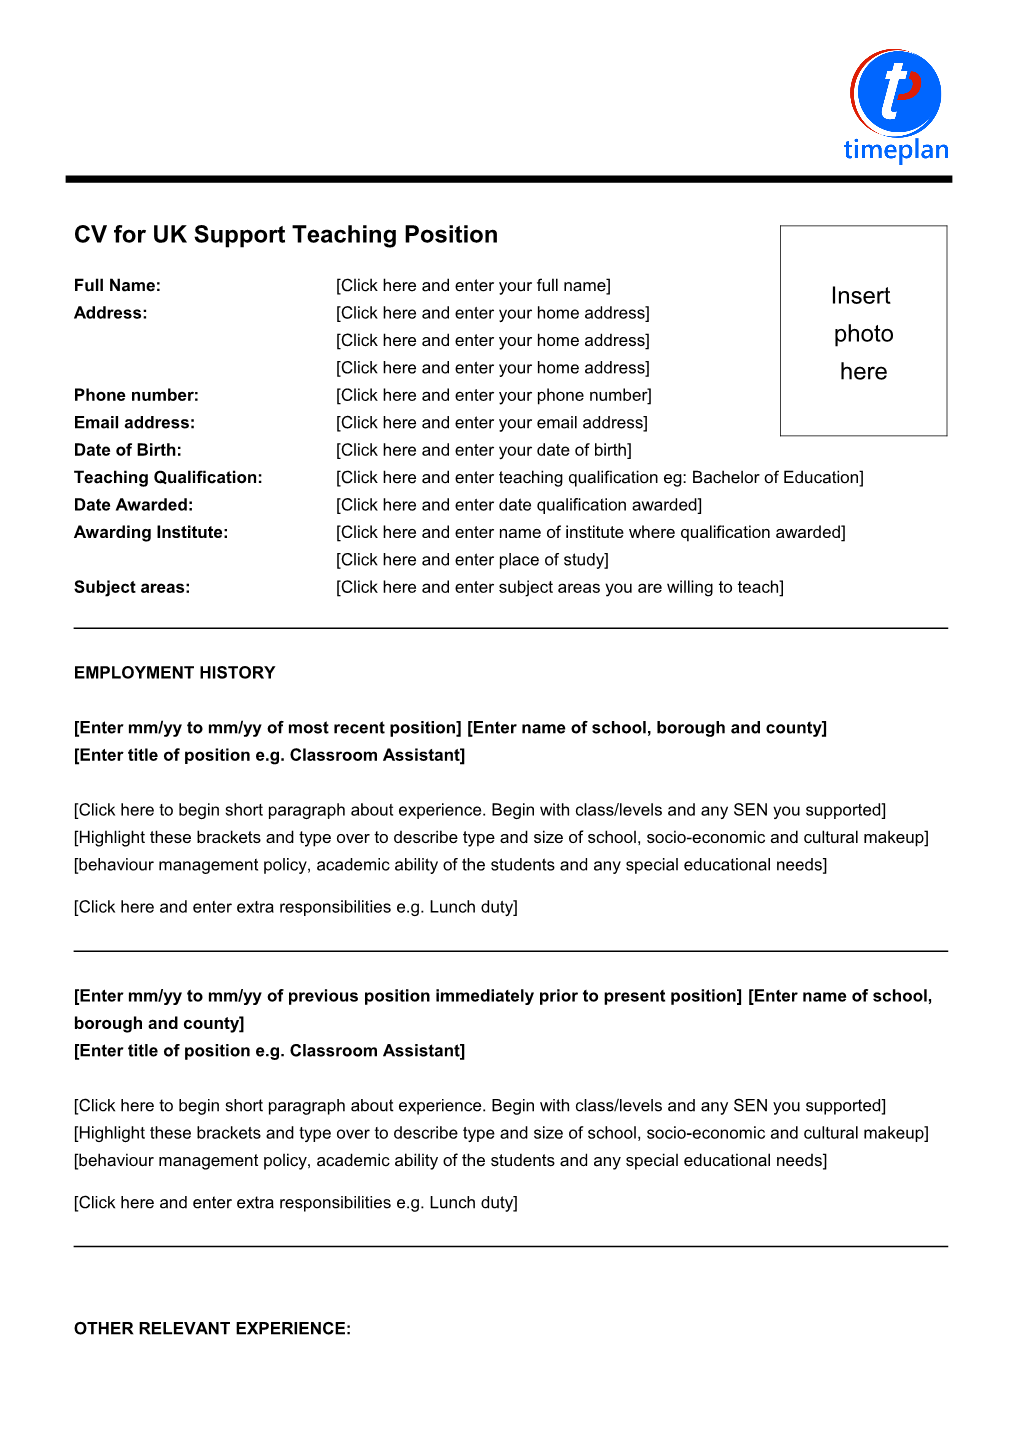 CV for UK Support Teaching Position